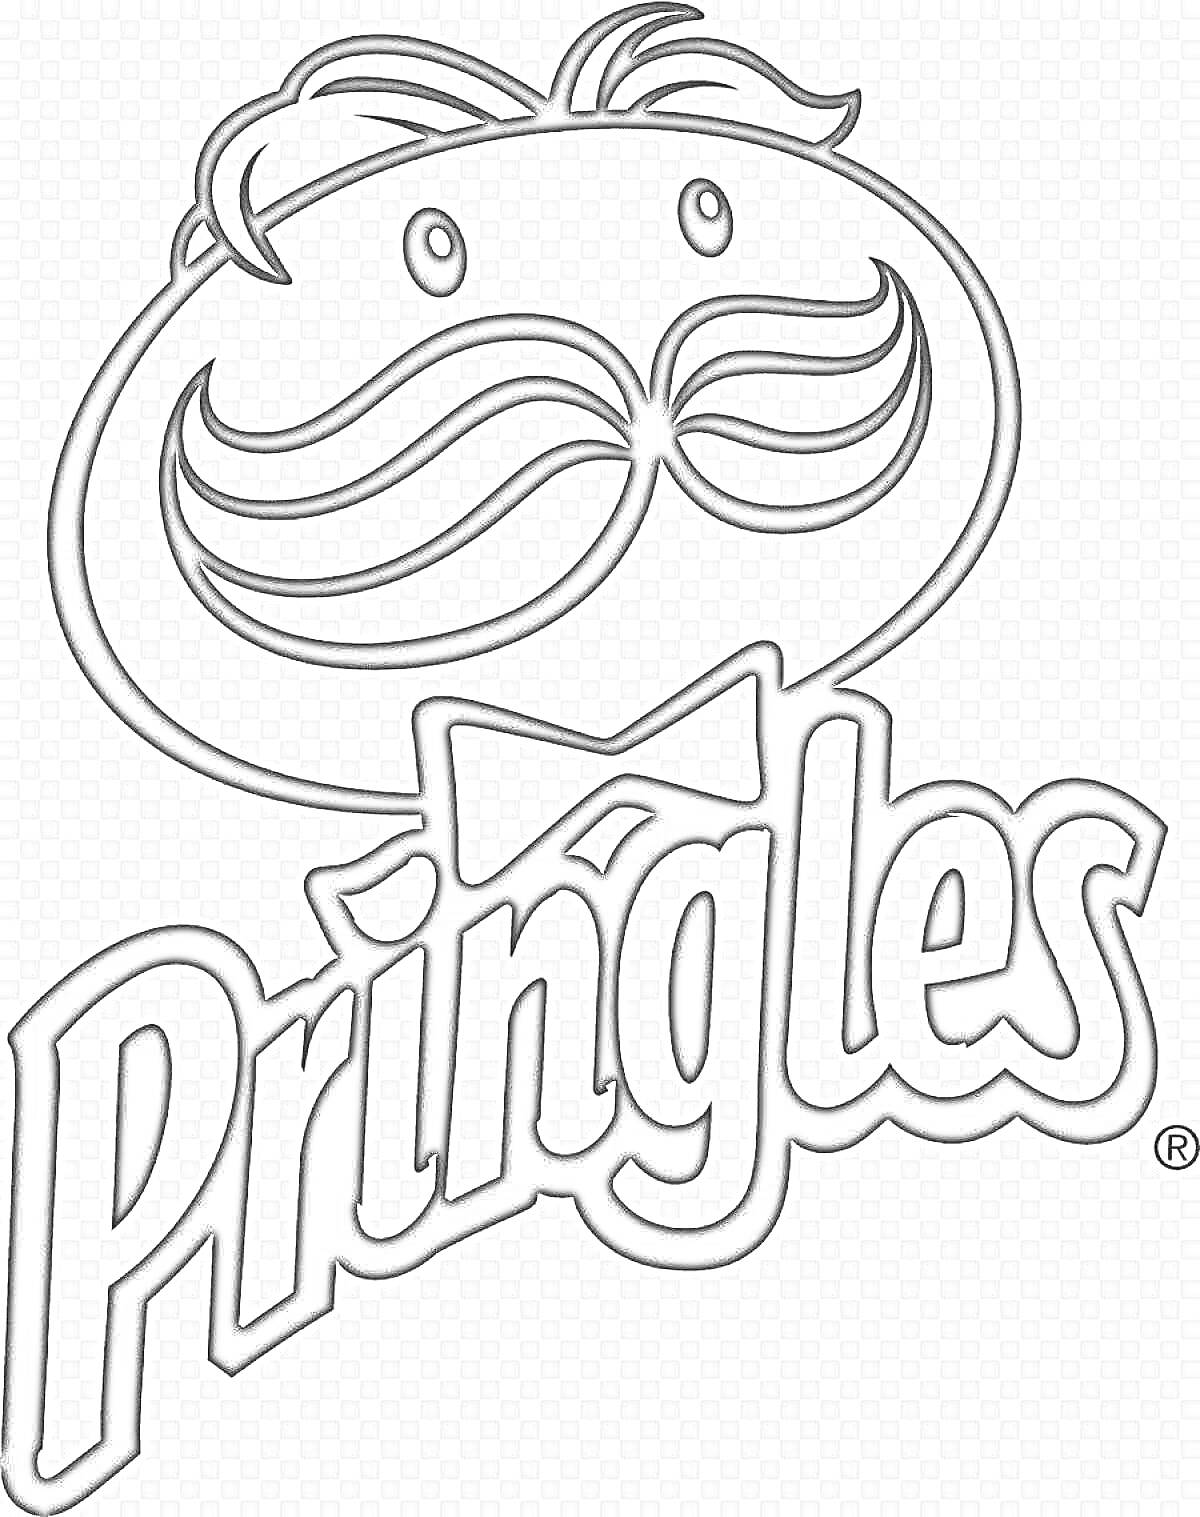 Логотип Pringles с изображением мужчины с усами и бабочкой, надпись 